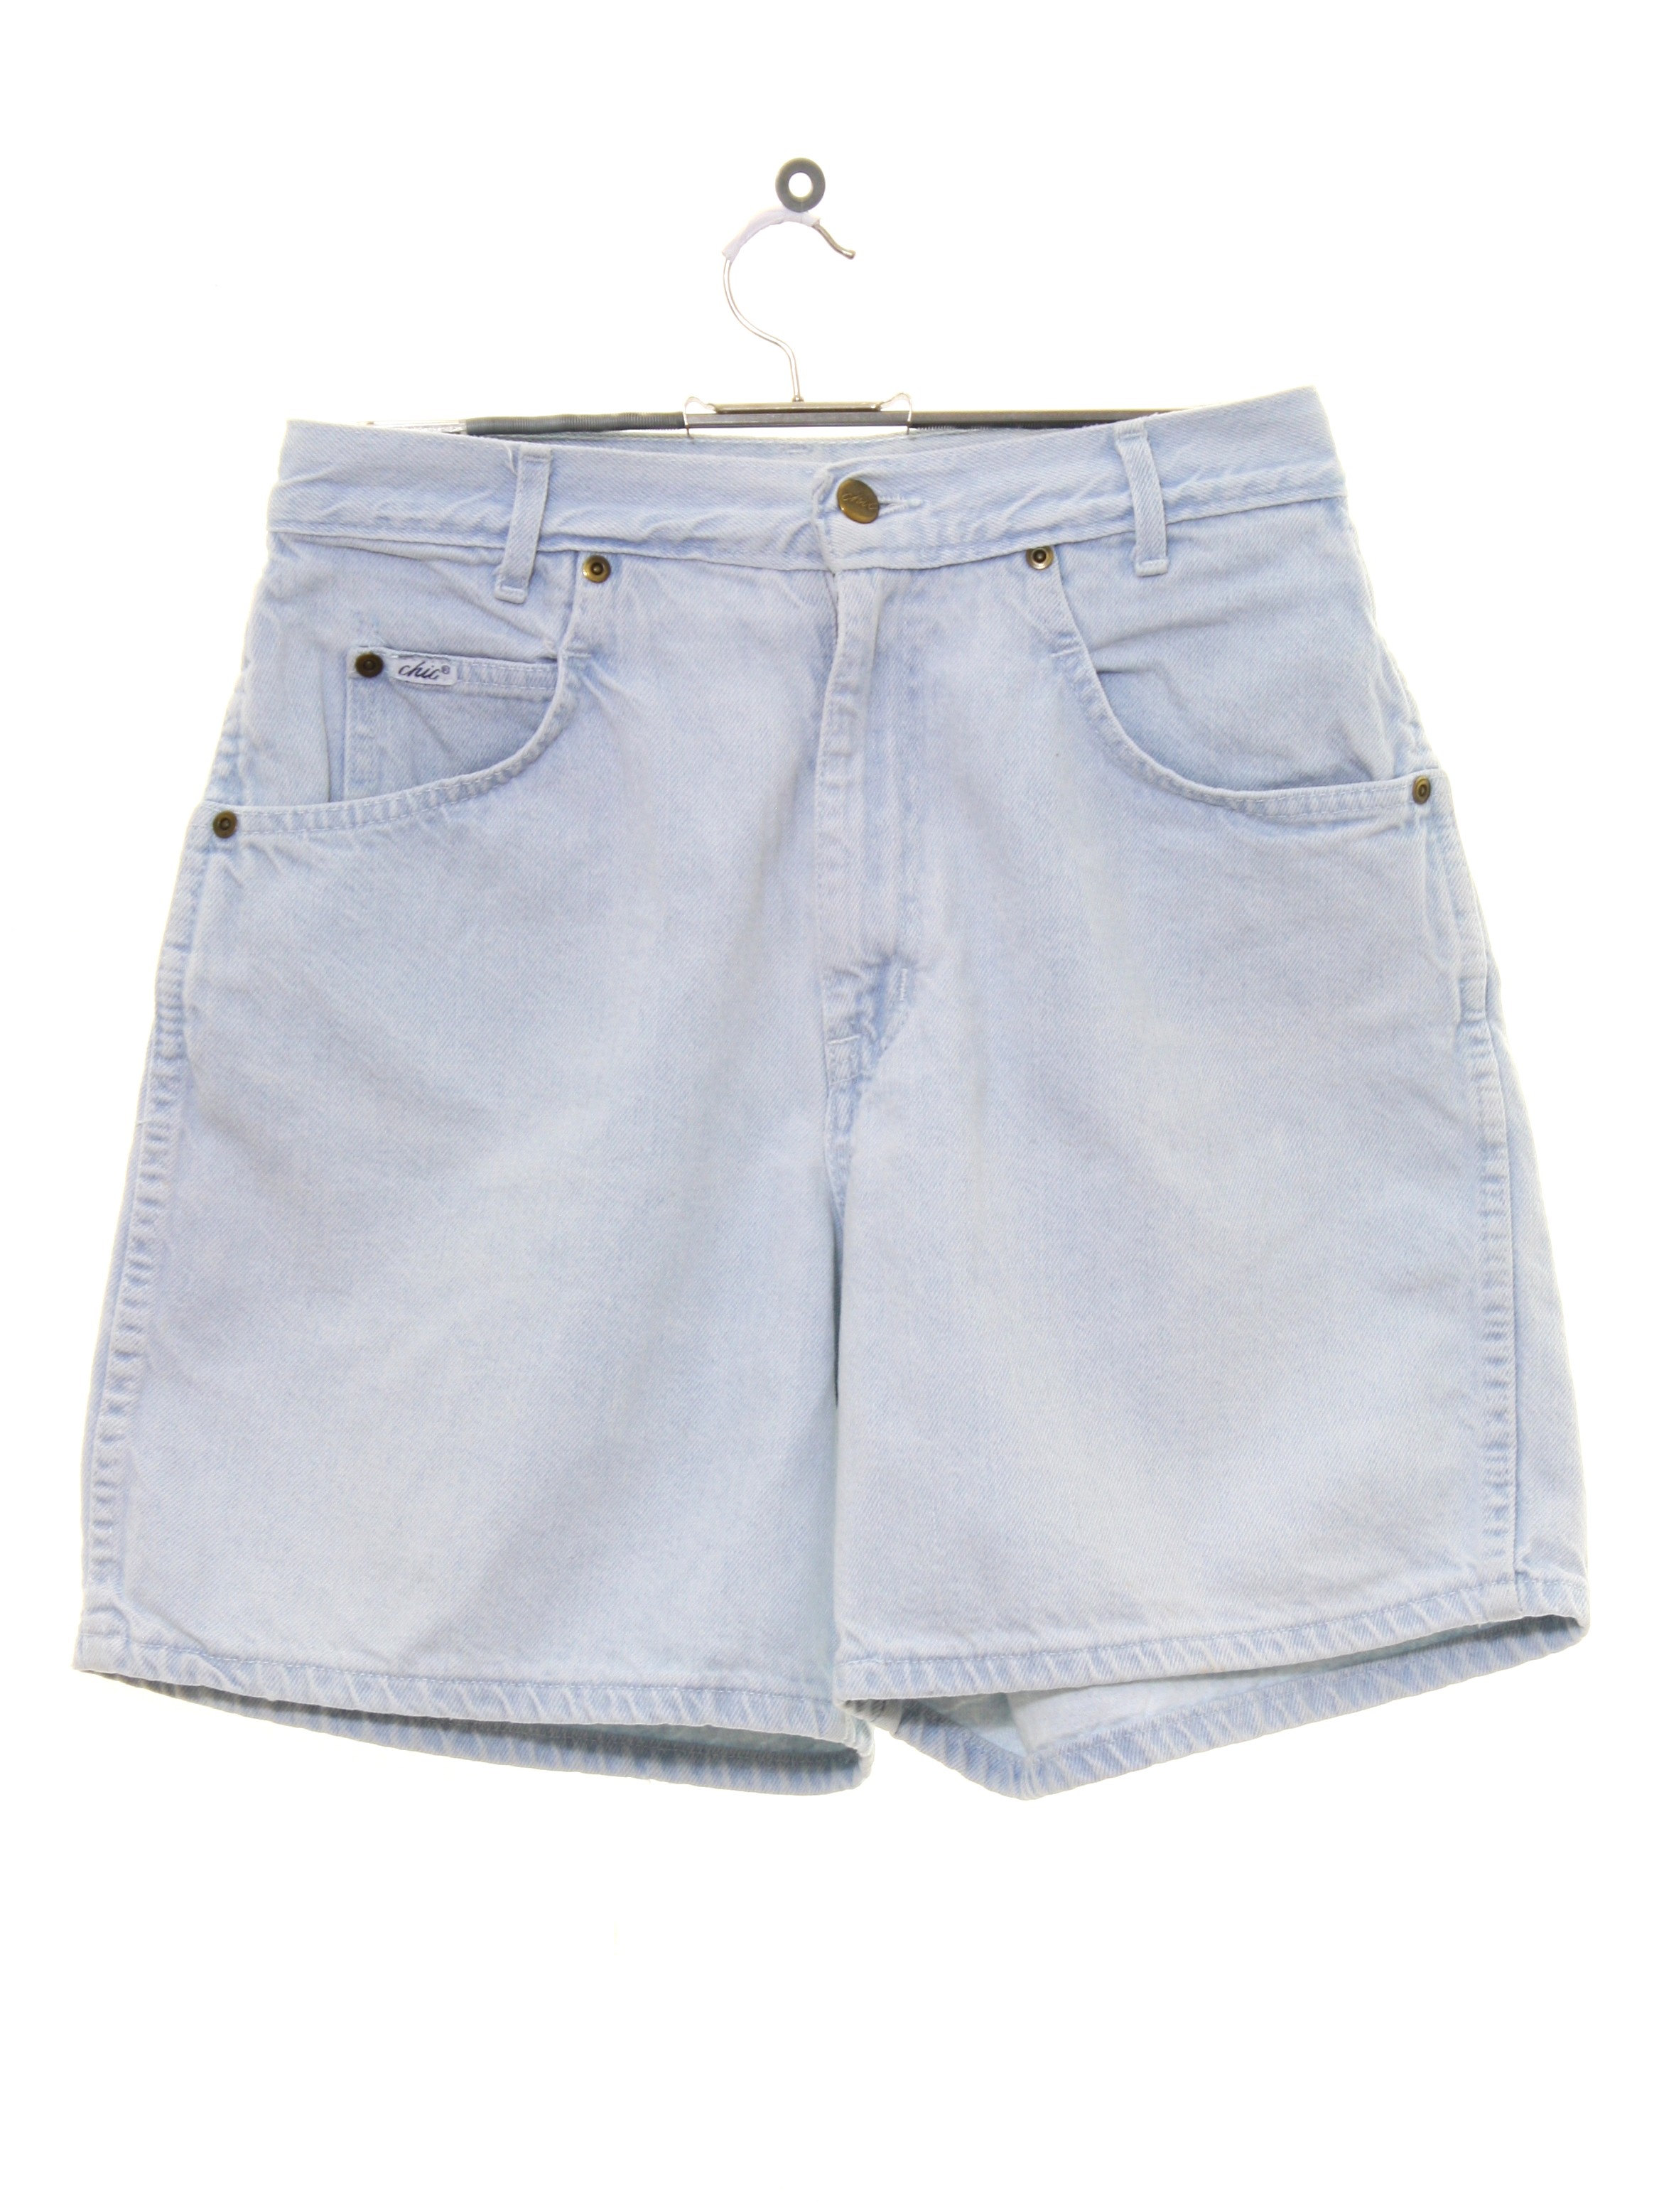 80's Vintage Shorts: 80s -Chic- Womens powder blue cotton denim jeans ...